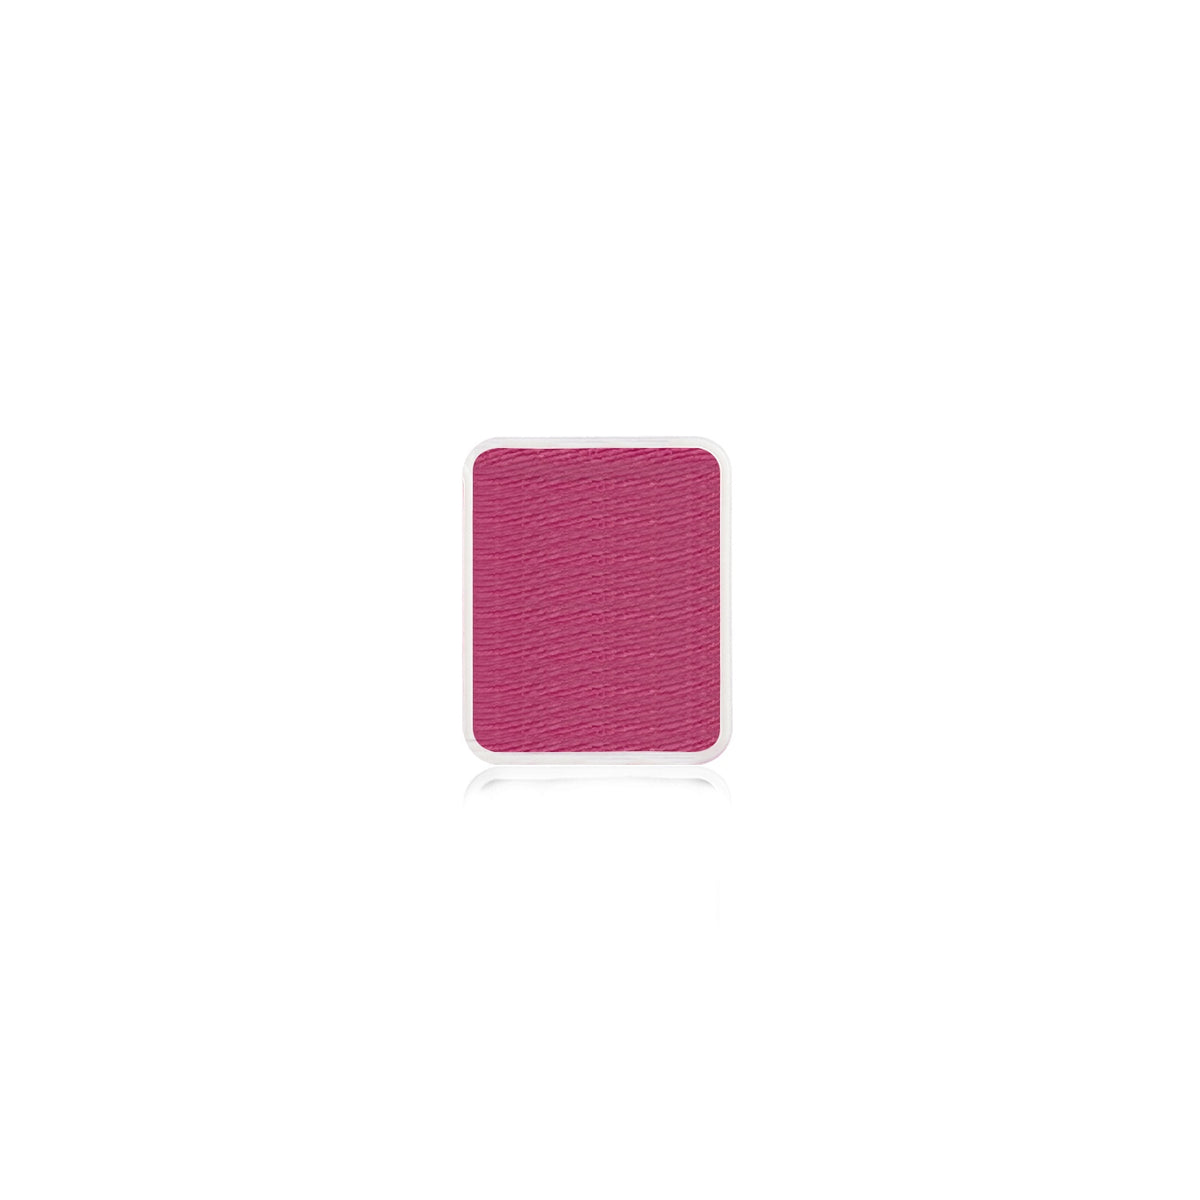 Kraze FX Face Paint Palette Refill - Coral Pink (0.21 oz/6 gm)